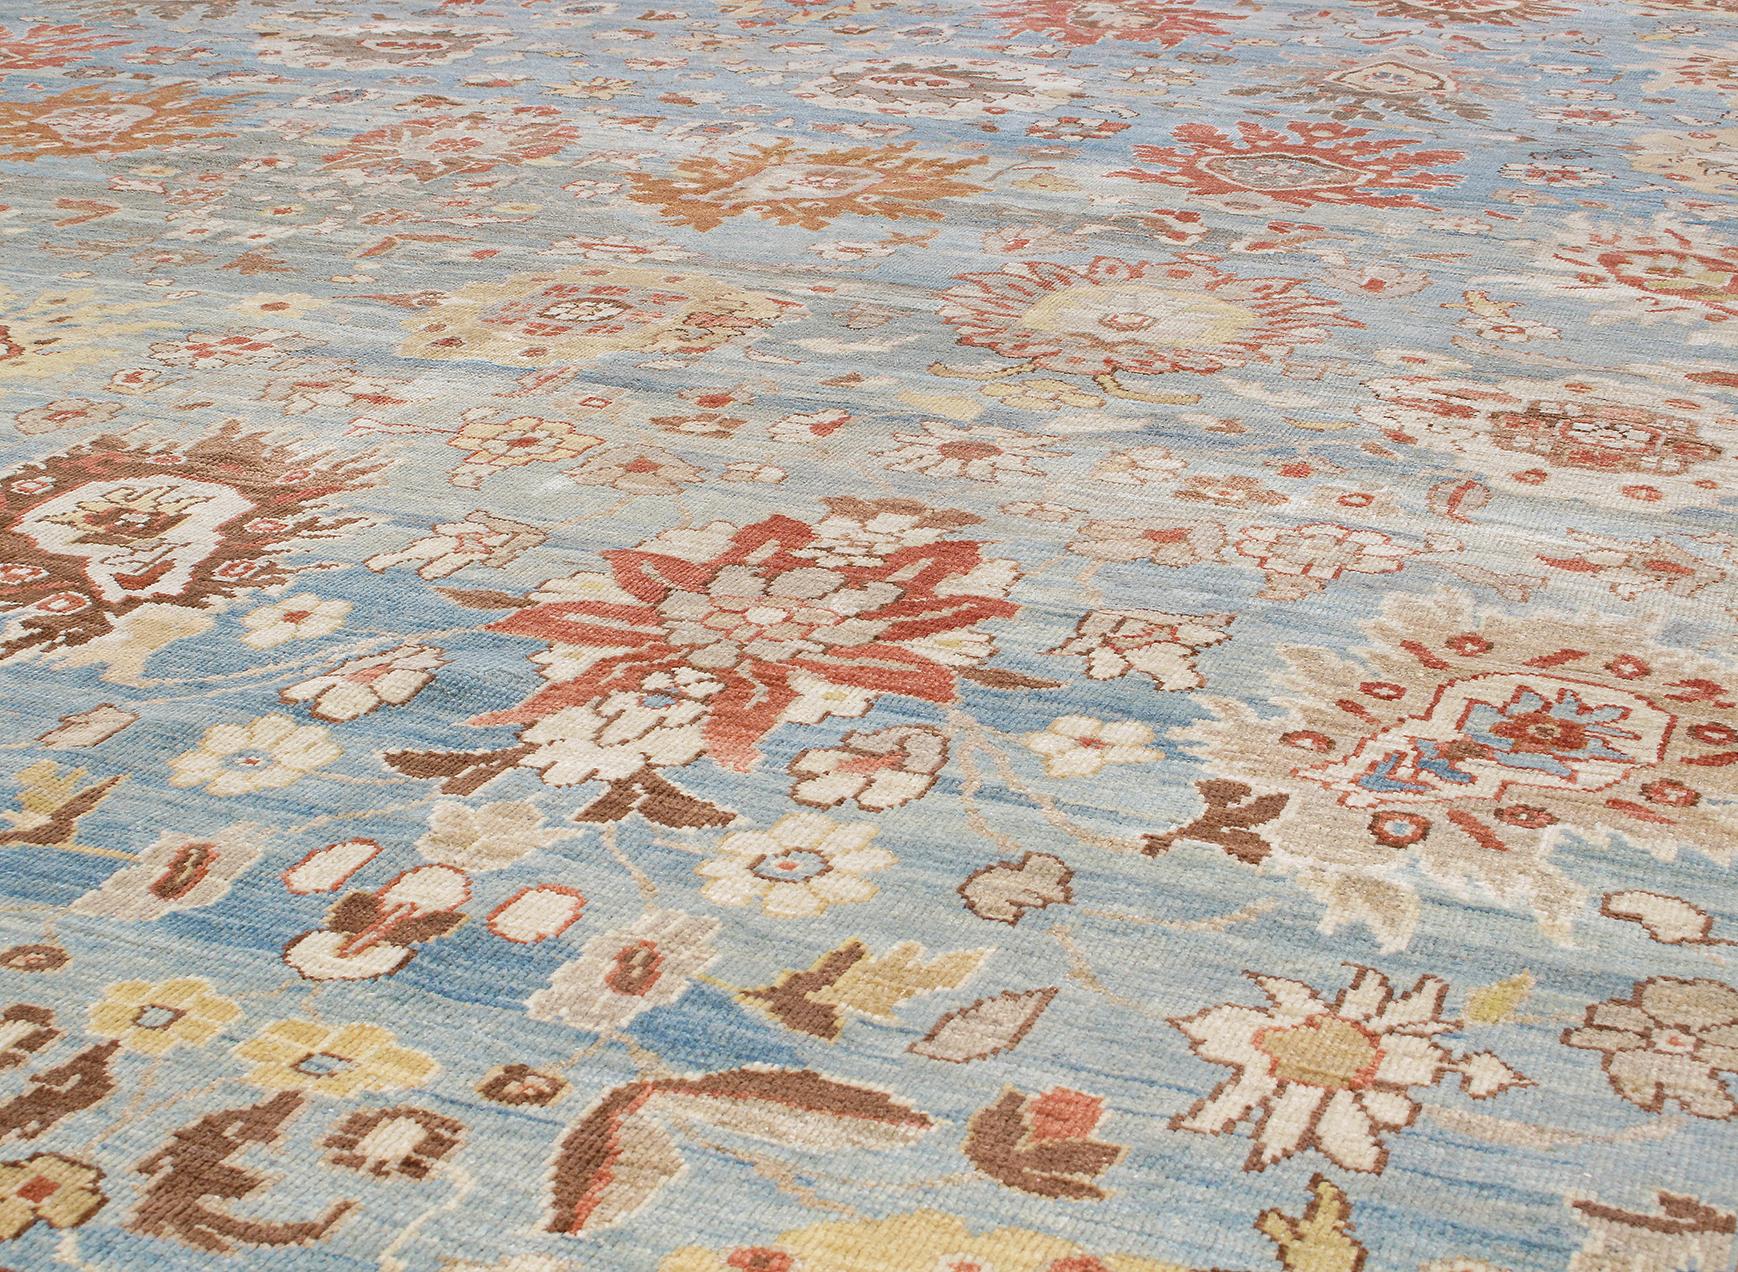 En 1875, la société anglo-suisse Ziegler and Co. a produit des tapis exquis dans la région de Sultanabad, en Perse occidentale. Ils ont allié tradition et innovation en faisant appel à des designers de New York et de Londres pour modifier les